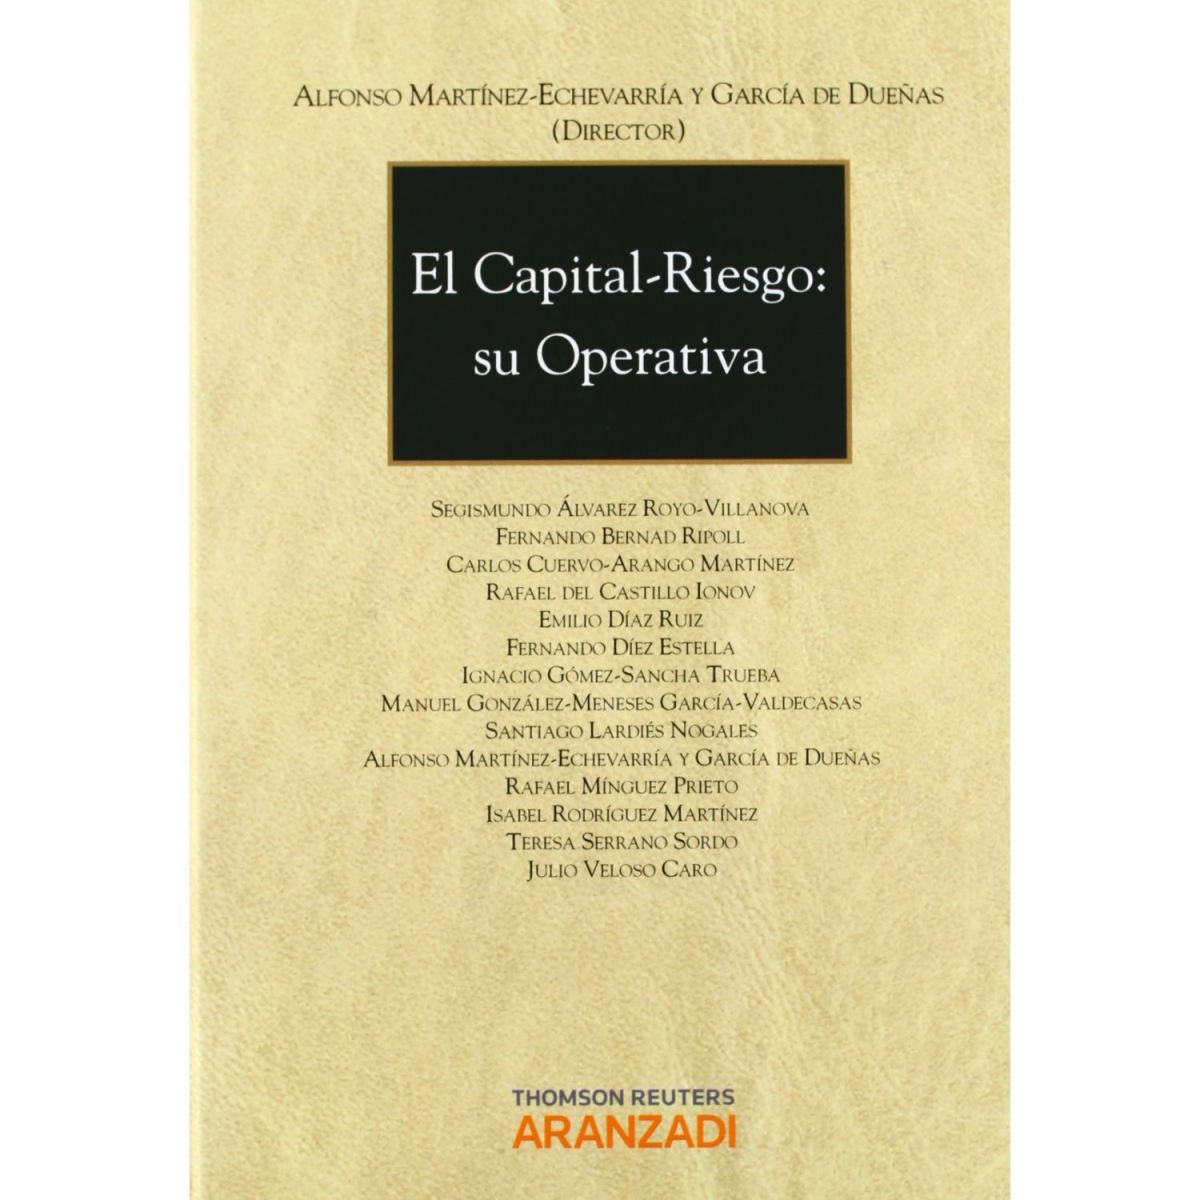 La Cátedra de Derecho de los Mercados Financieros de la Universidad CEU San Pablo publica la obra colectiva "El capital riesgo: su operativa"